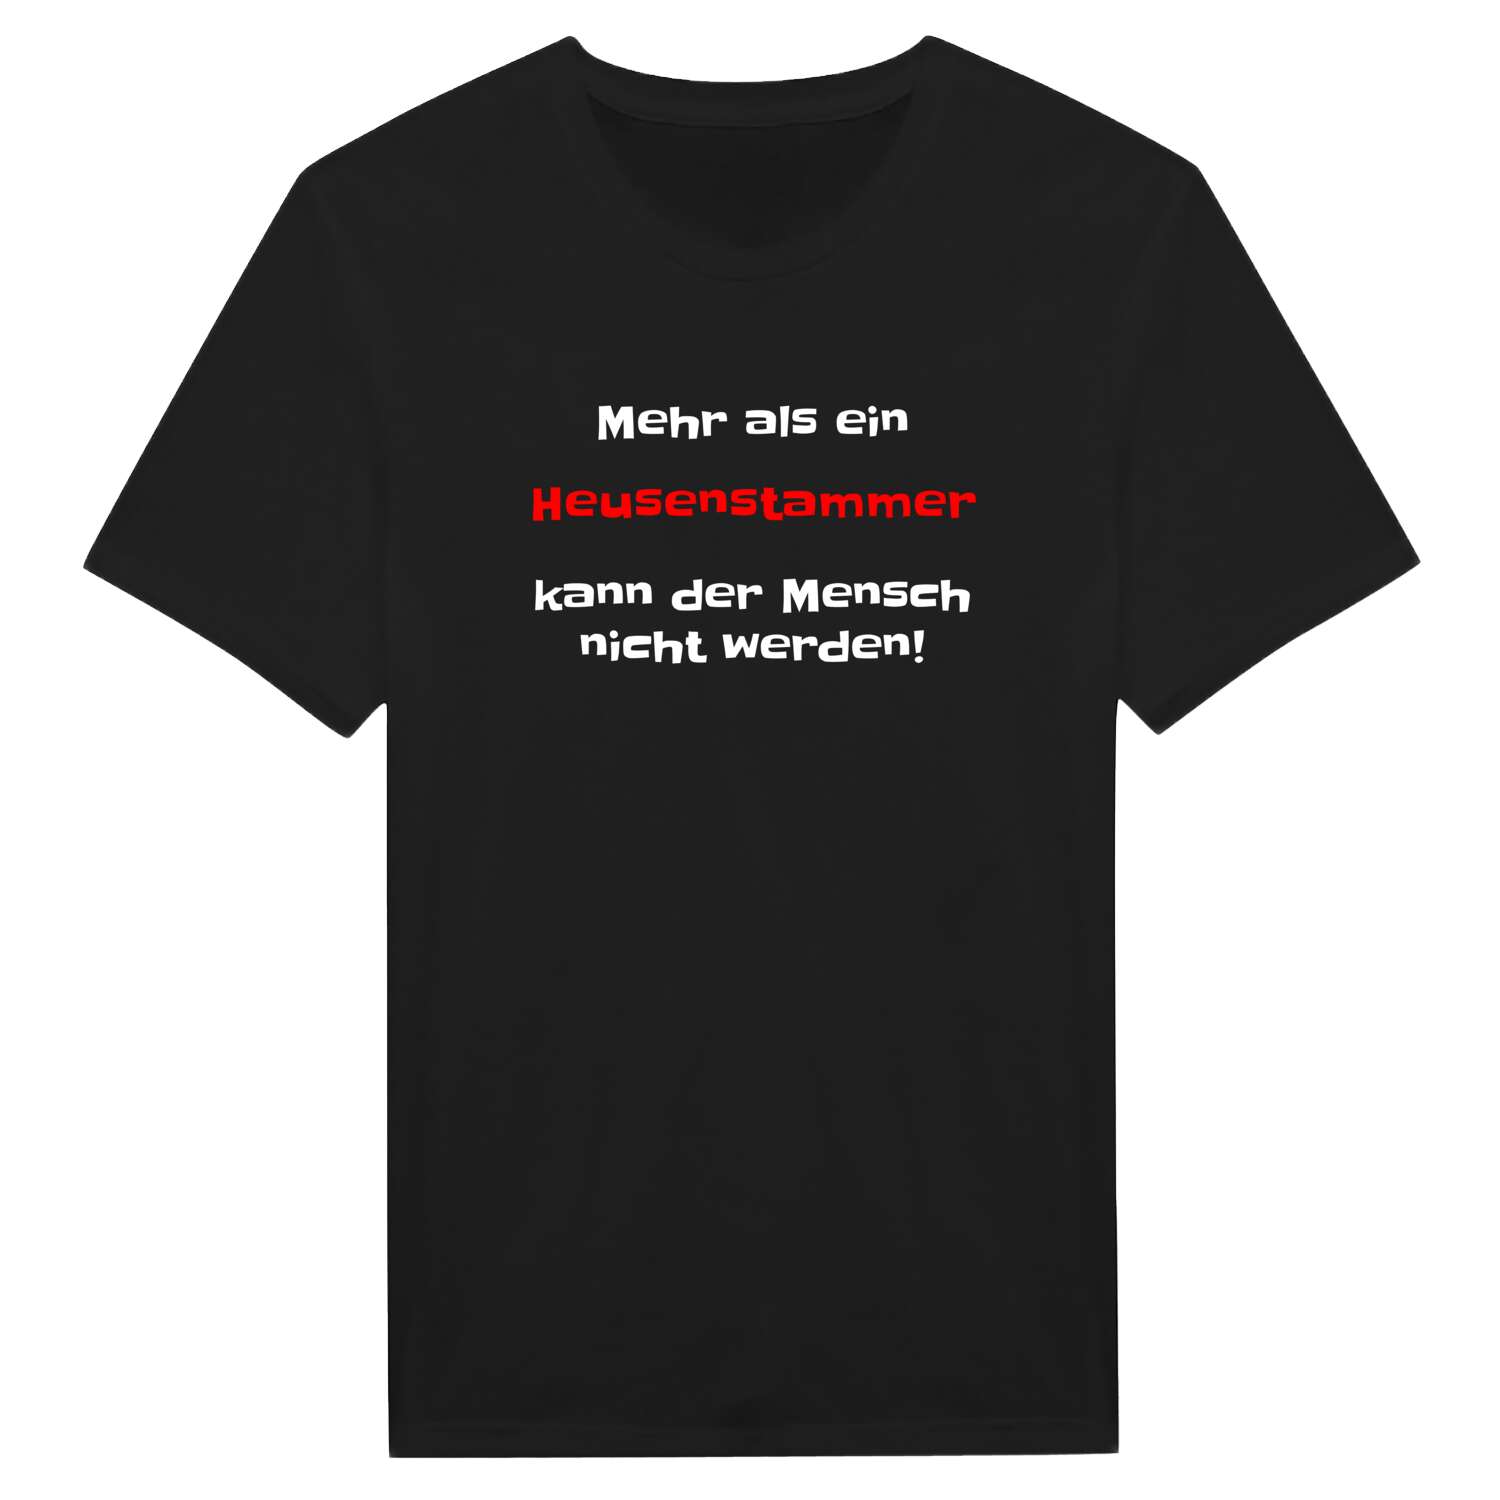 Heusenstamm T-Shirt »Mehr als ein«